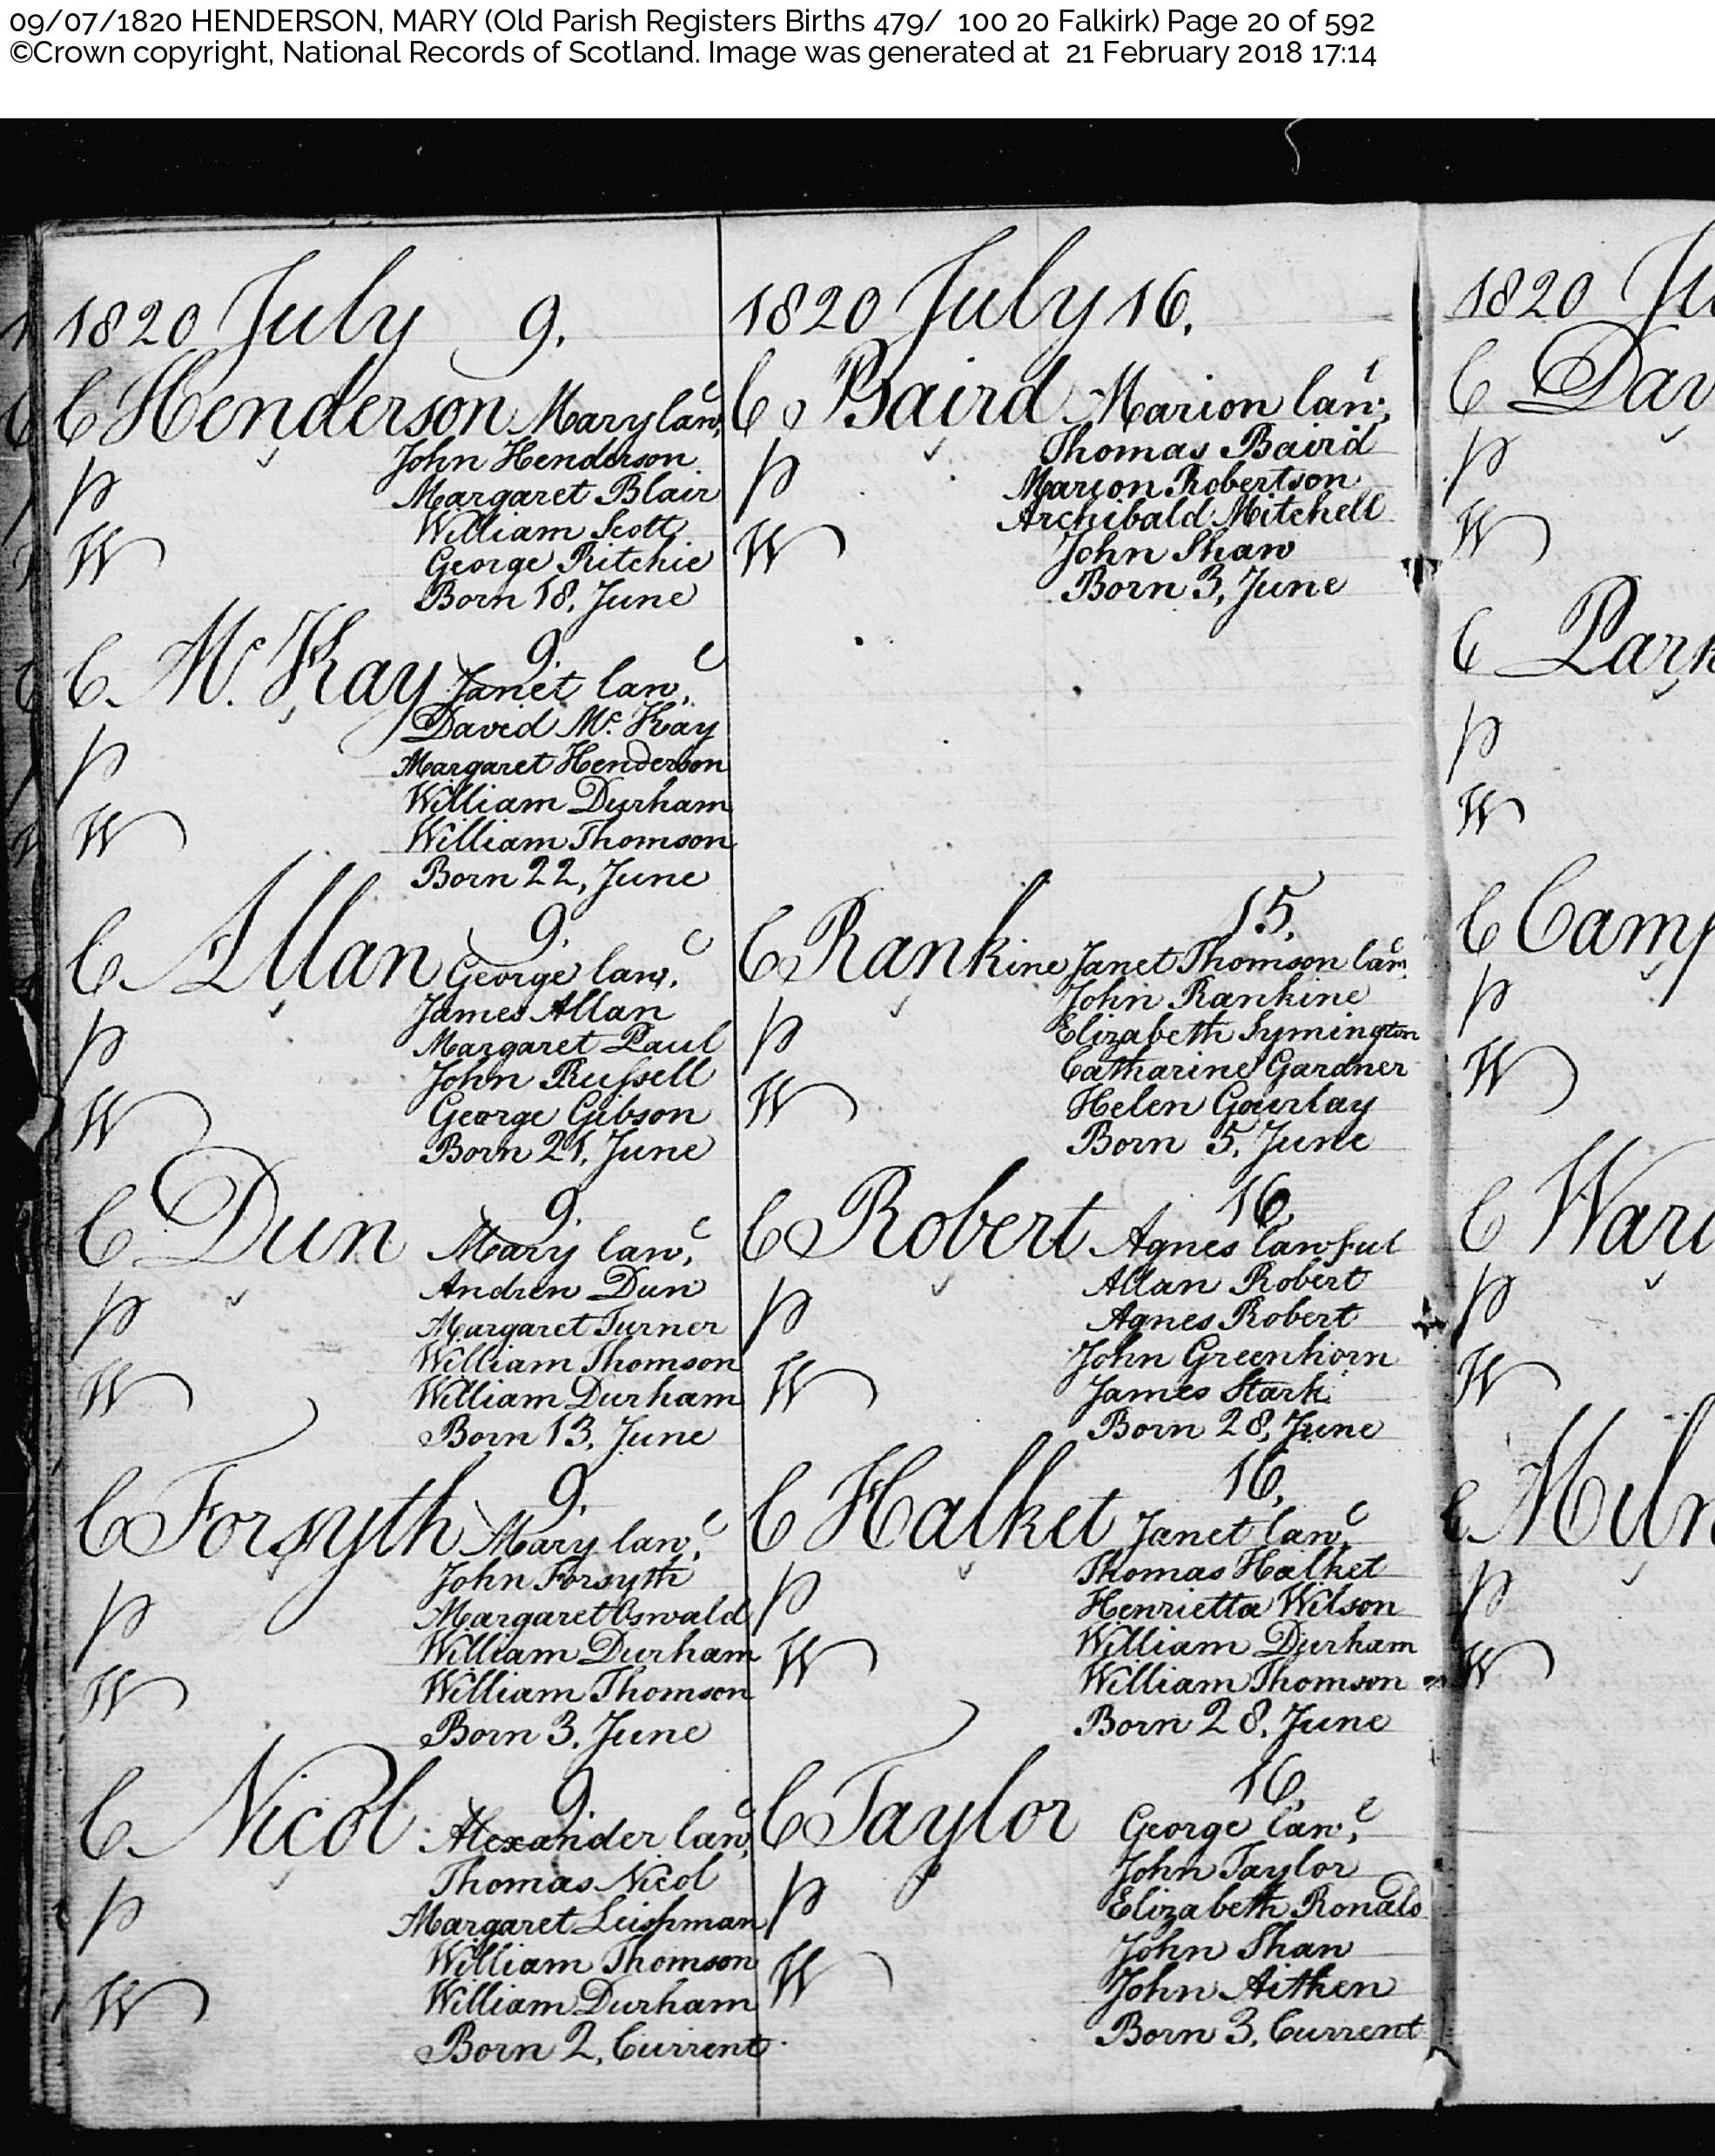 MaryHenderson_B1820 Falkirk, July 9, 1820